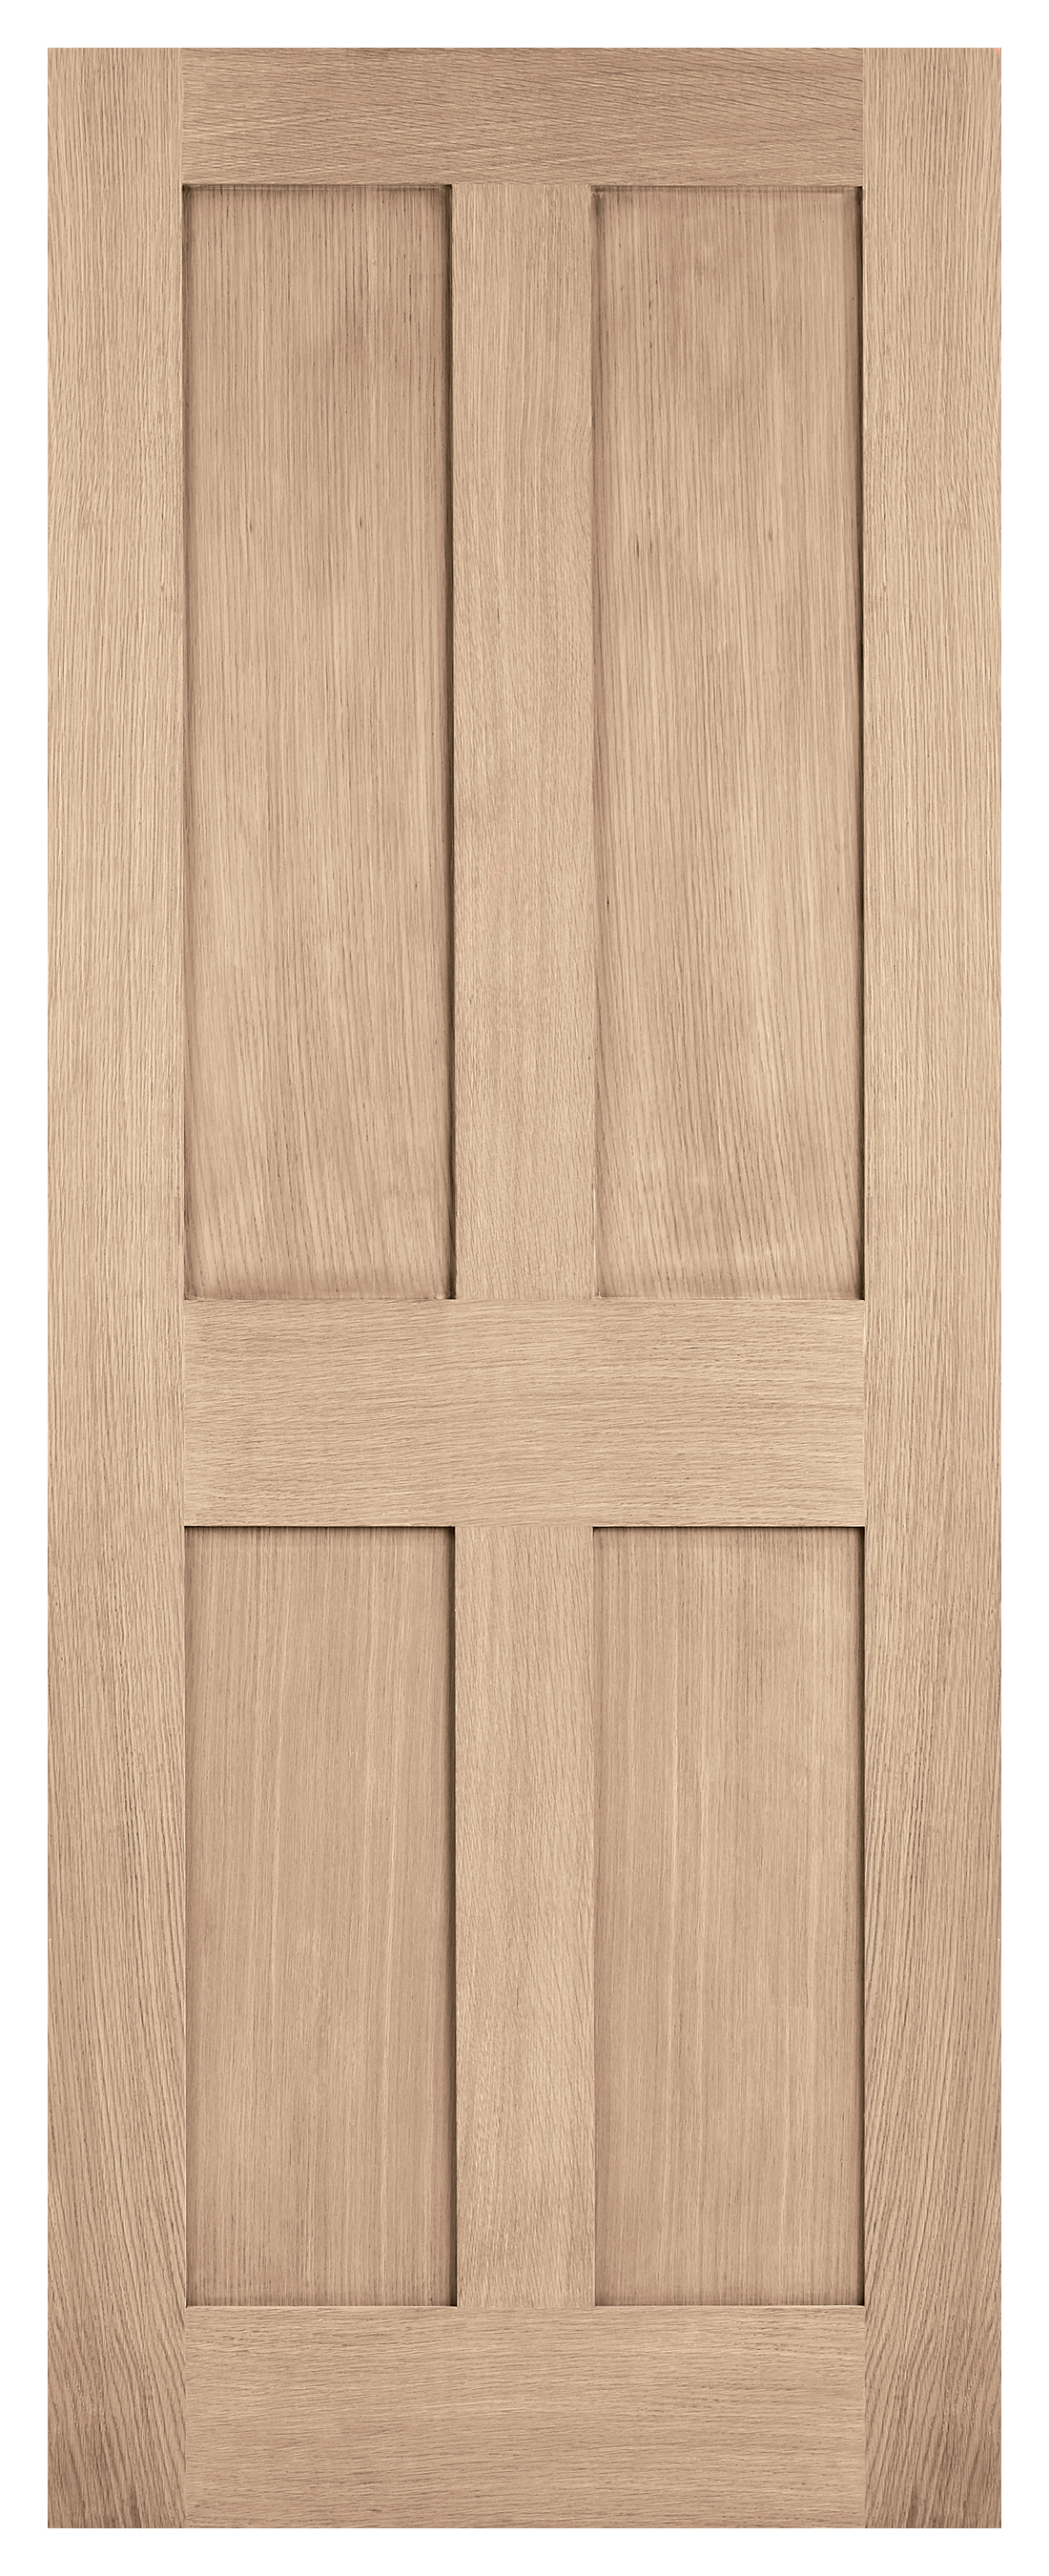 Image of LPD Internal London 4 Panel Pre-finished Oak FD30 Fire Door - 686 x 1981mm